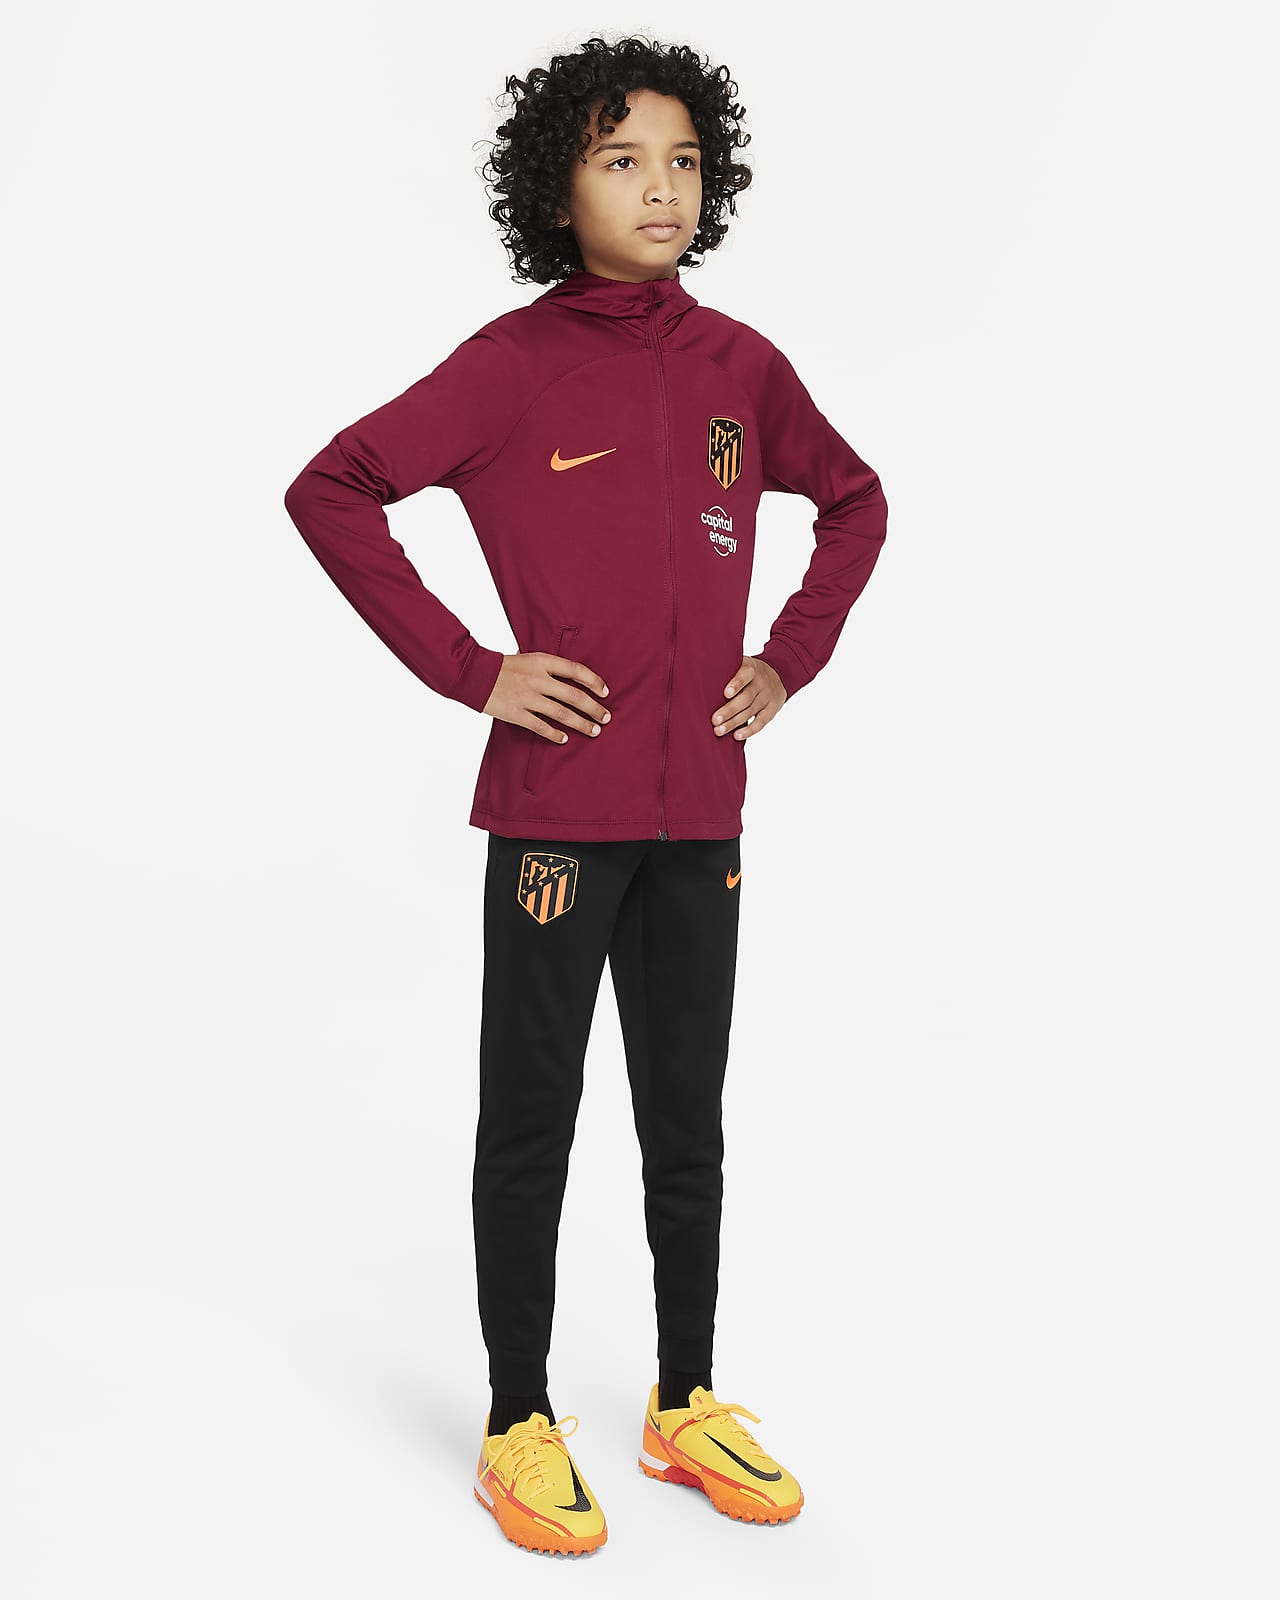 Atlético Madrid Strike Nike Dri-FIT Fußball-Trainingsanzug mit Kapuze für ältere Kinder